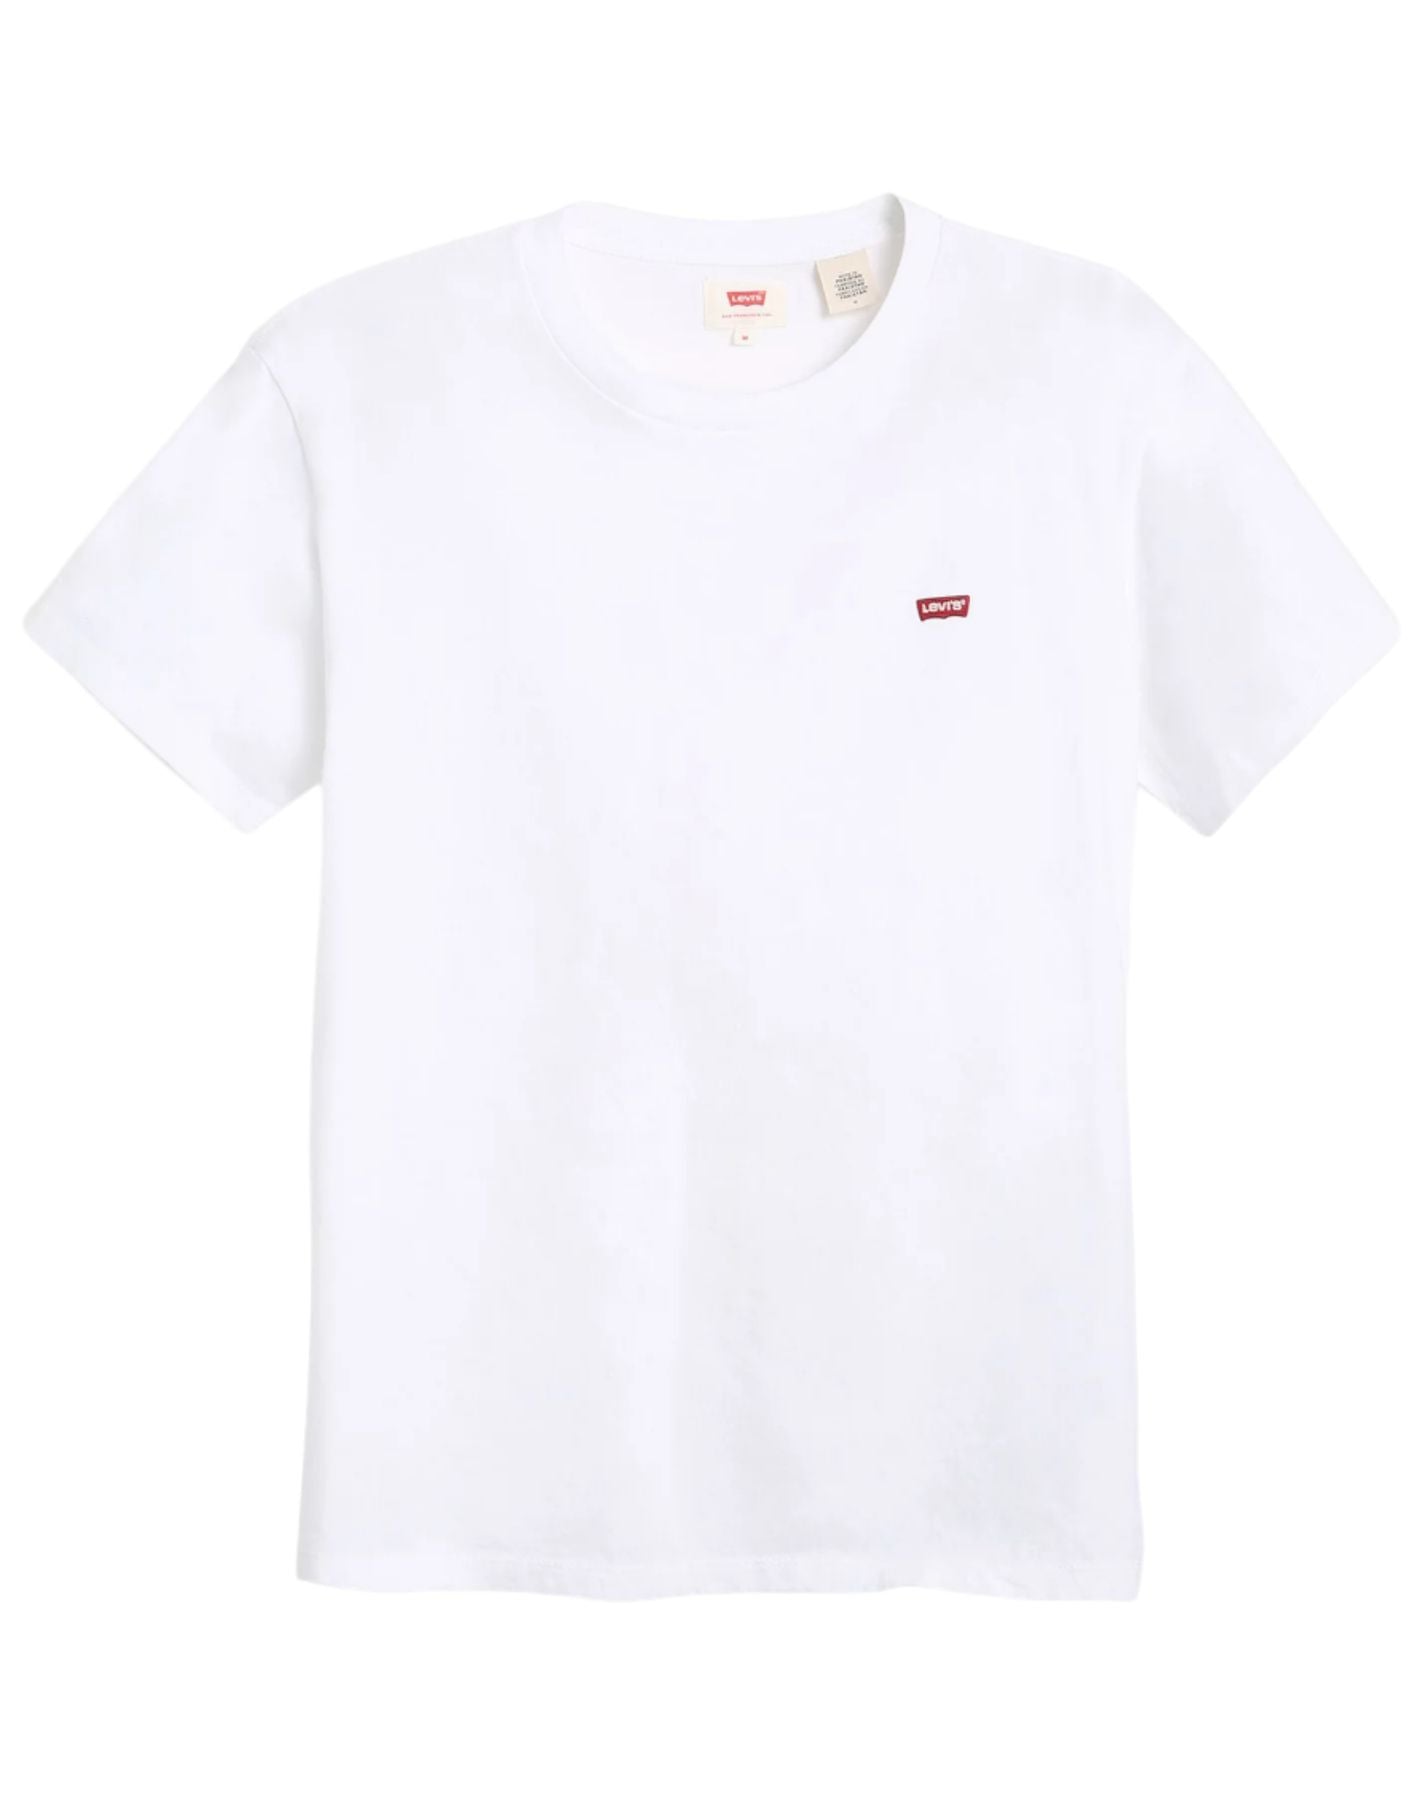 T-shirt man 56605 0000 levi blanc